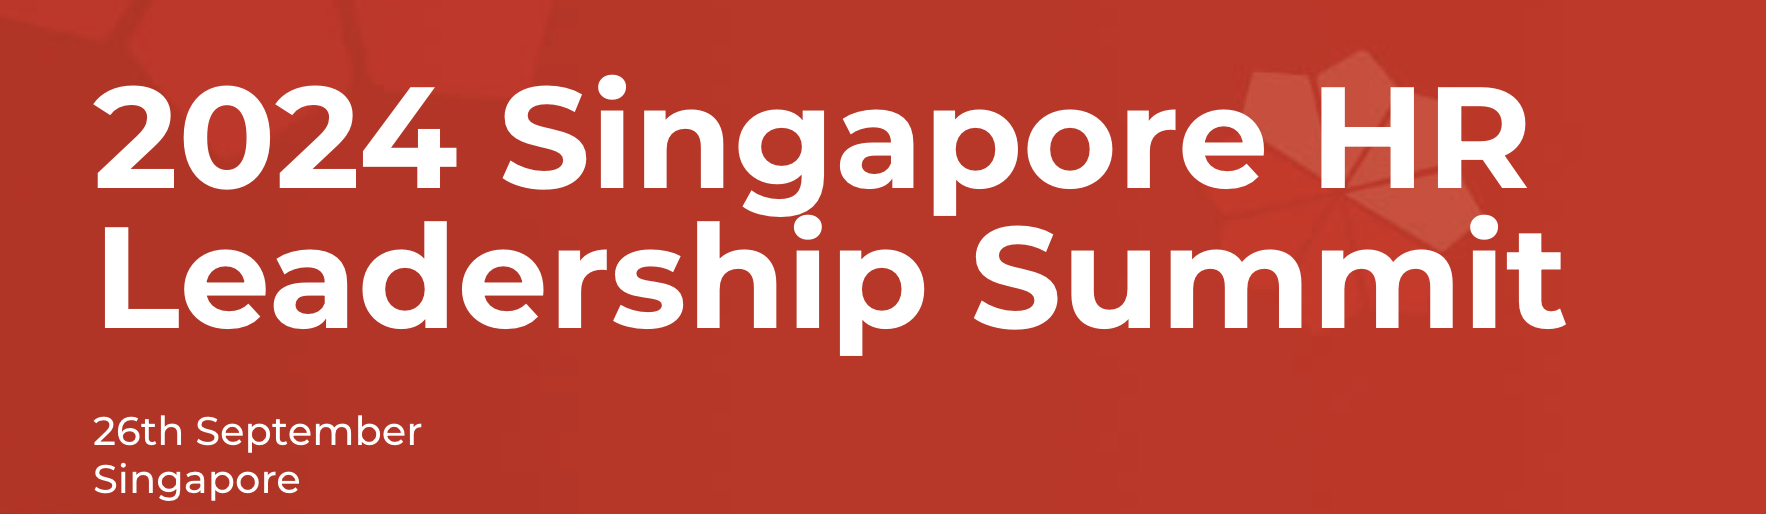 Singapore HR Leadership Summit